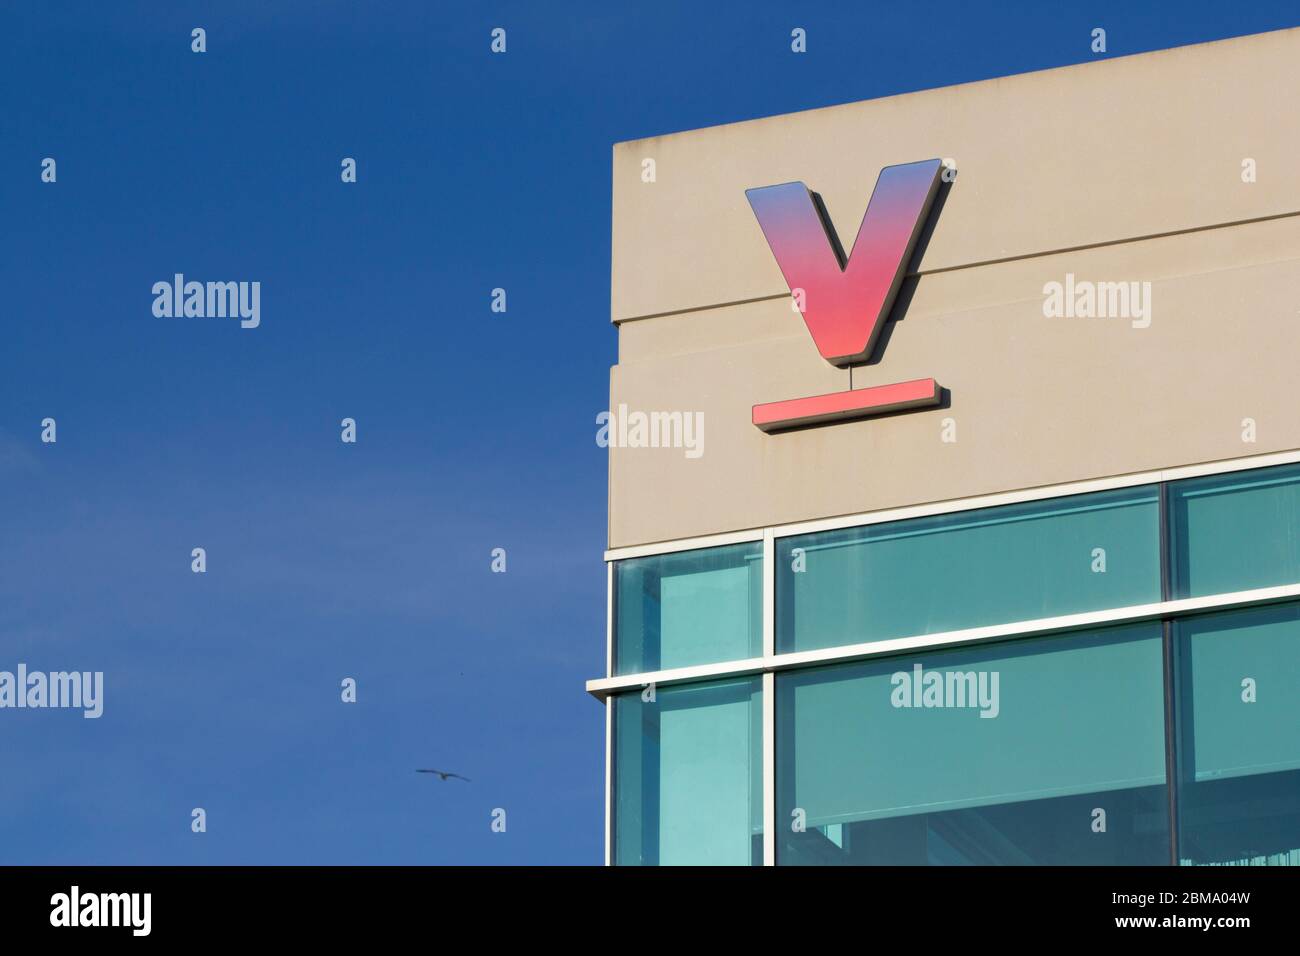 Le logo de Verily est visible au siège social de Verily Life Sciences. Verily est l'organisme de recherche d'Alphabet Inc. Qui a consacré l'étude des sciences de la vie. Banque D'Images